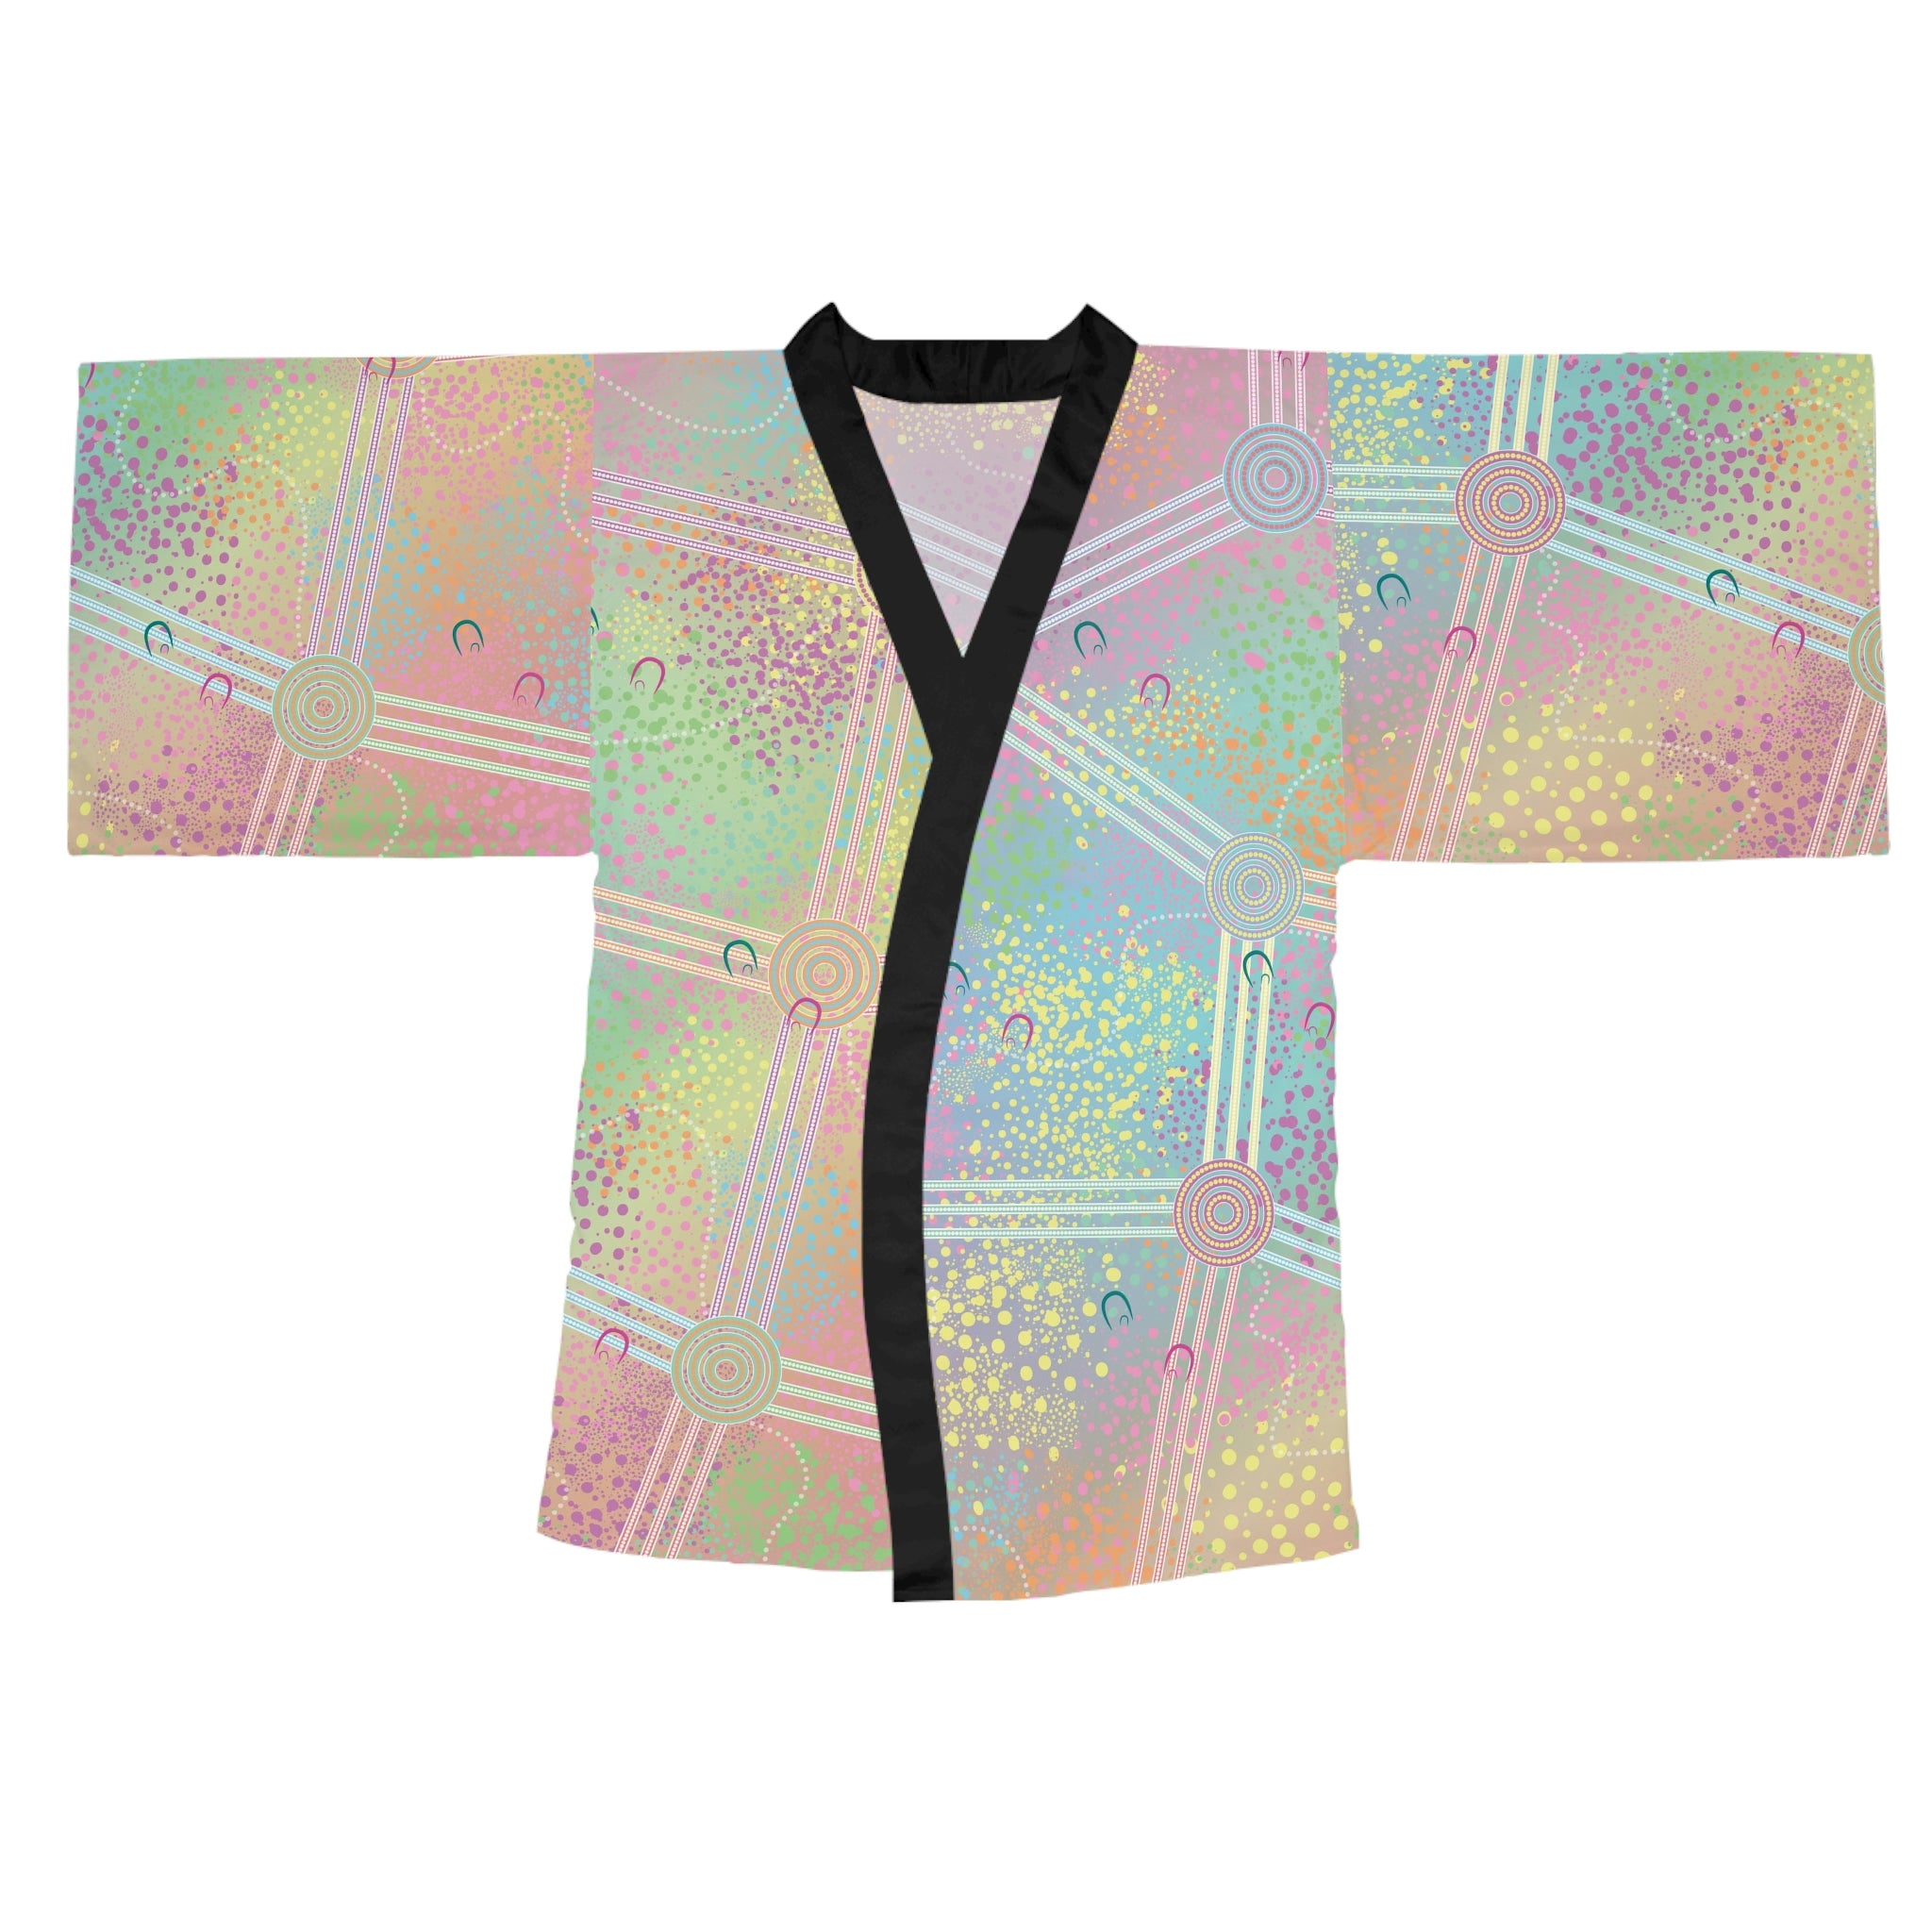 A Mother's Work - Kimono Robe